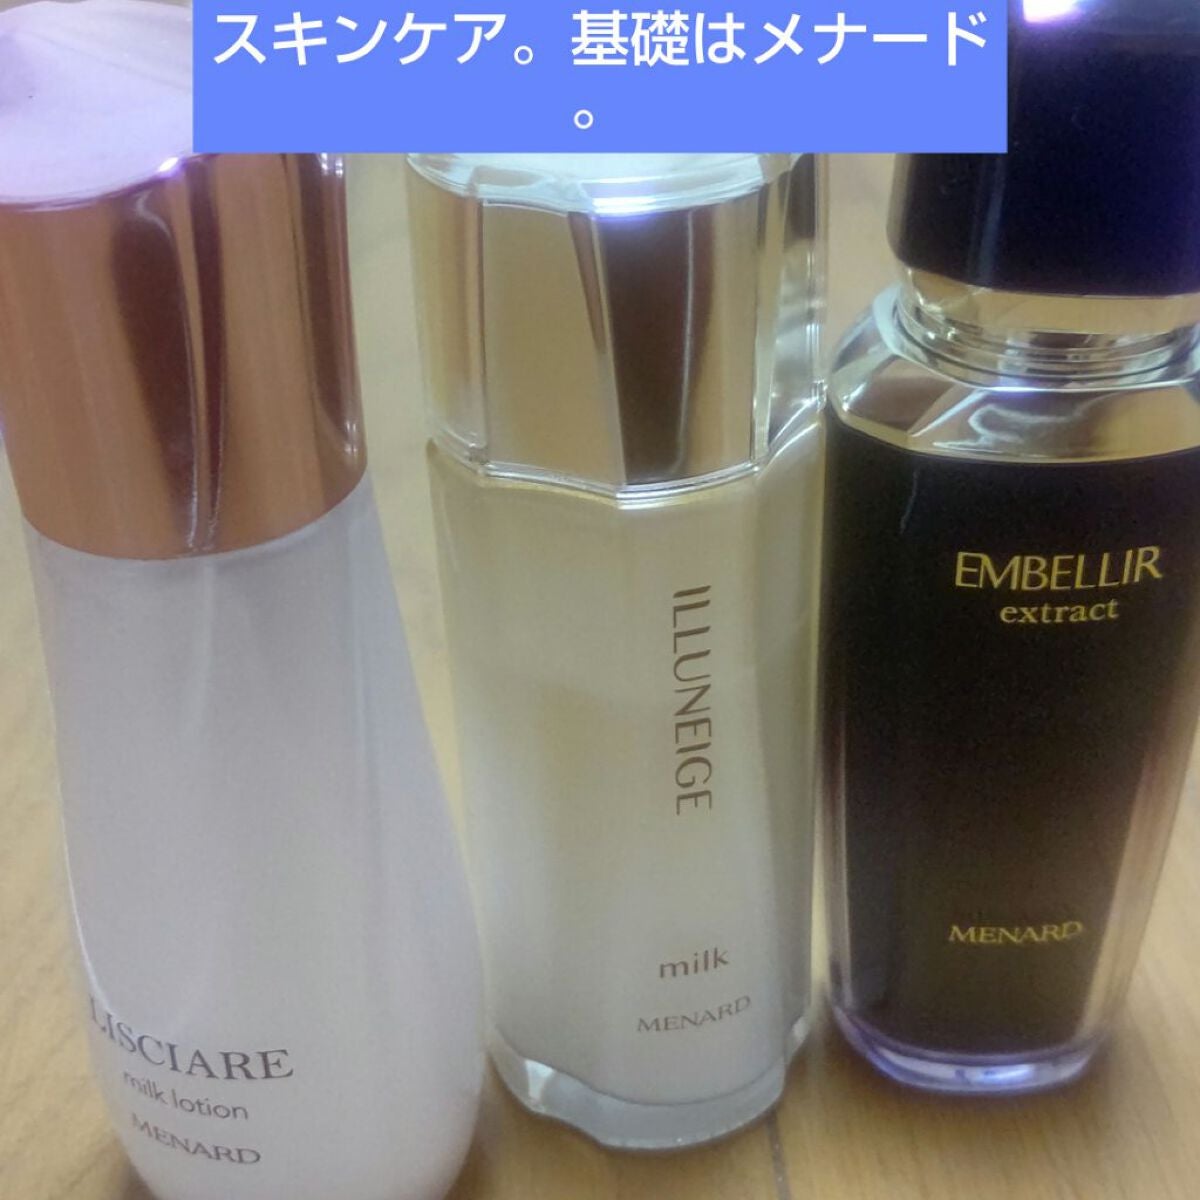 MENARD メナード エンベリエ リクイド A 化粧液 130ml - 化粧水/ローション